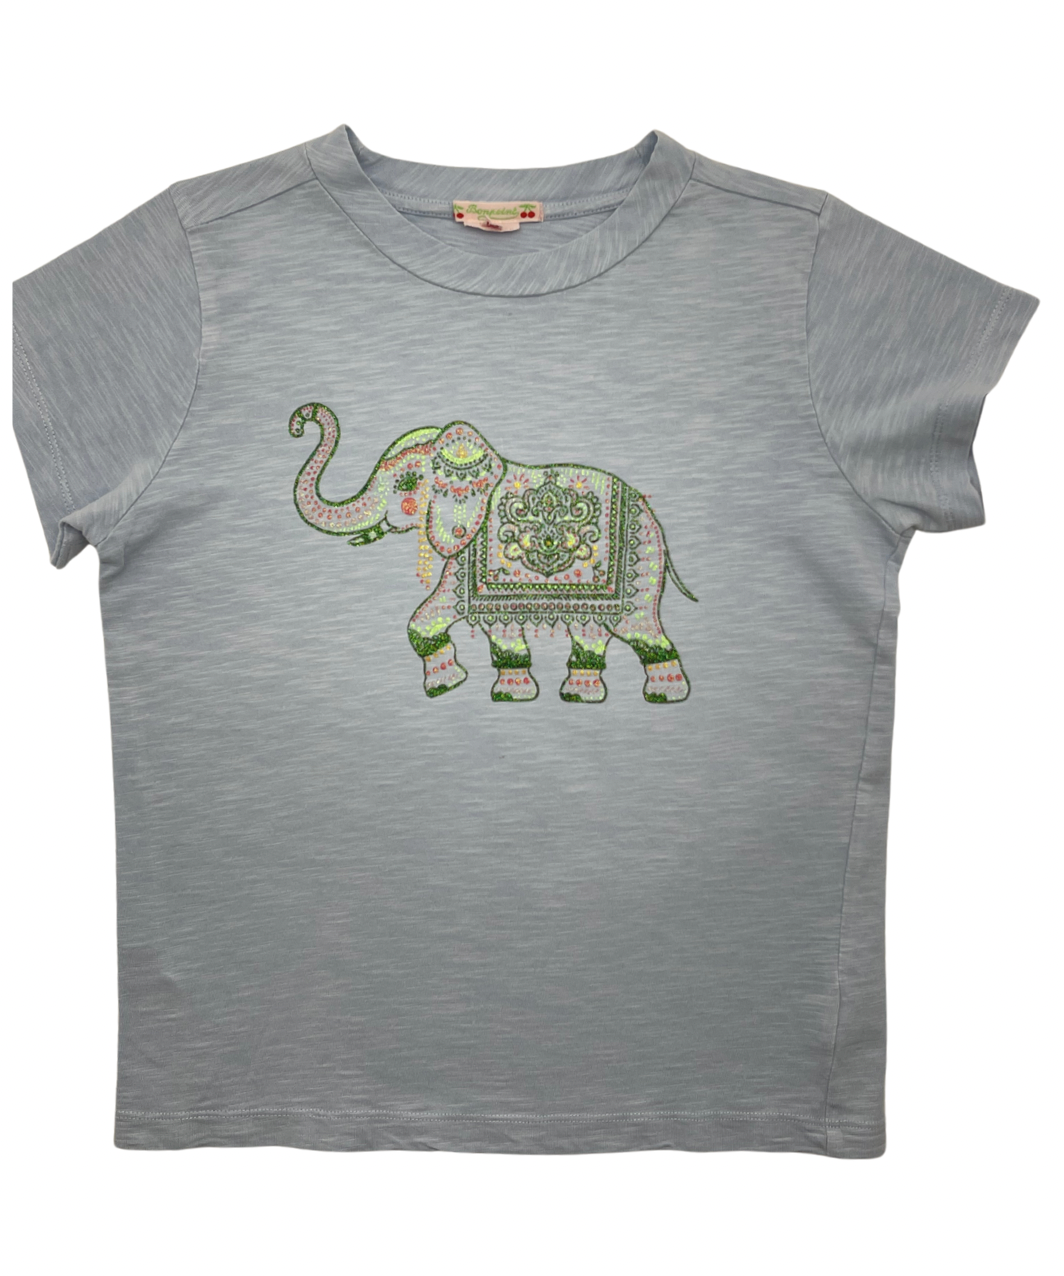 Bonpoint - T-shirt éléphant - 12 ans